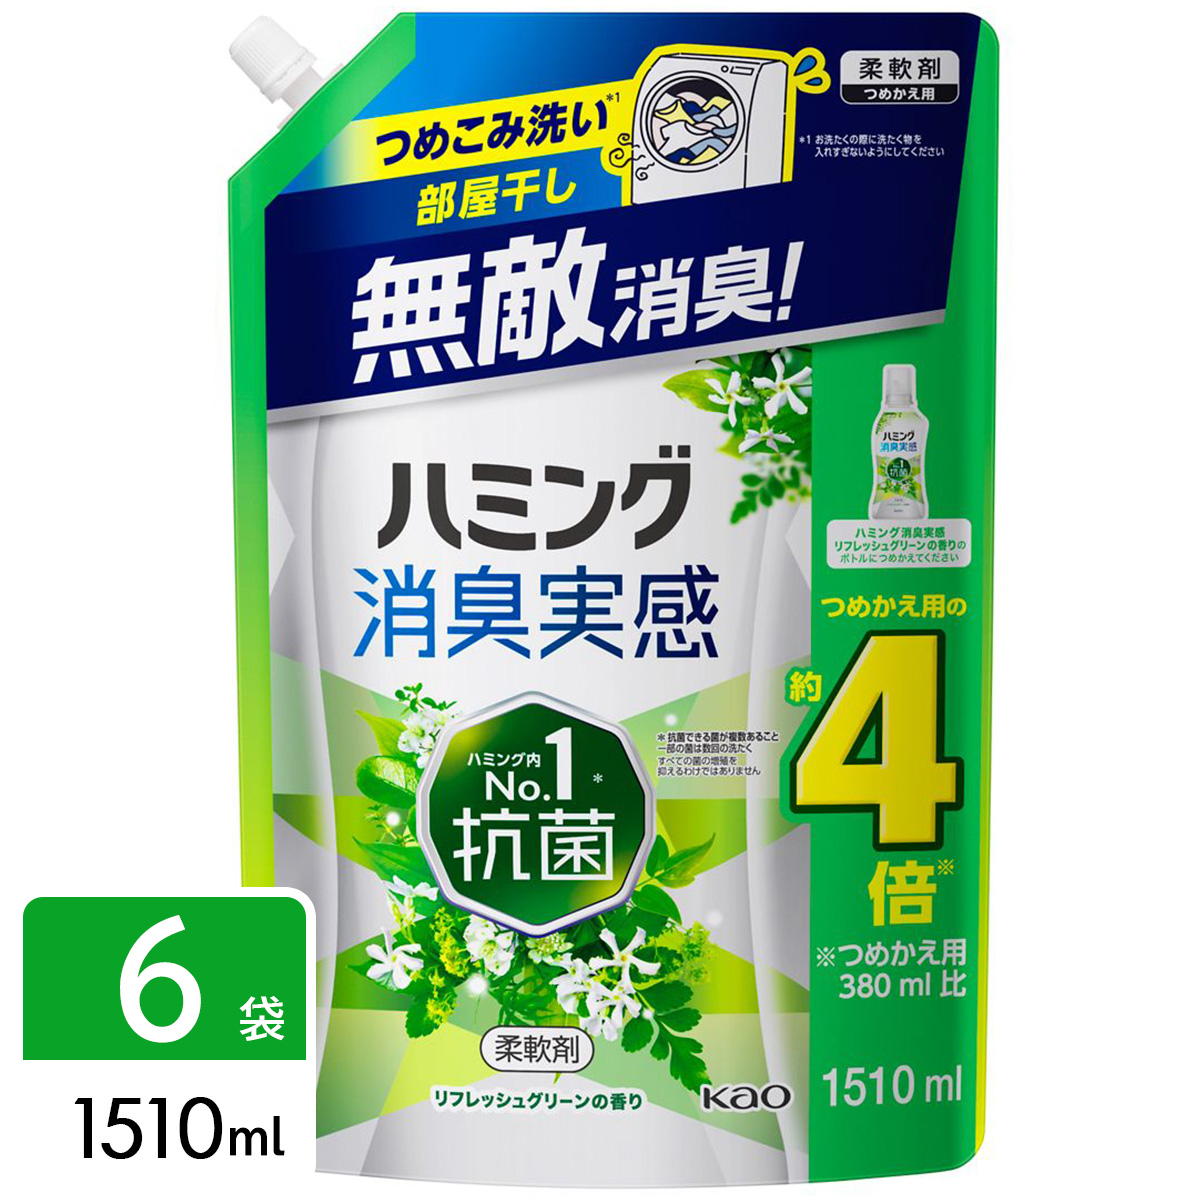 ハミング消臭実感 柔軟剤 リフレッシュグリーンの香り 詰め替え用 1510ml×6袋